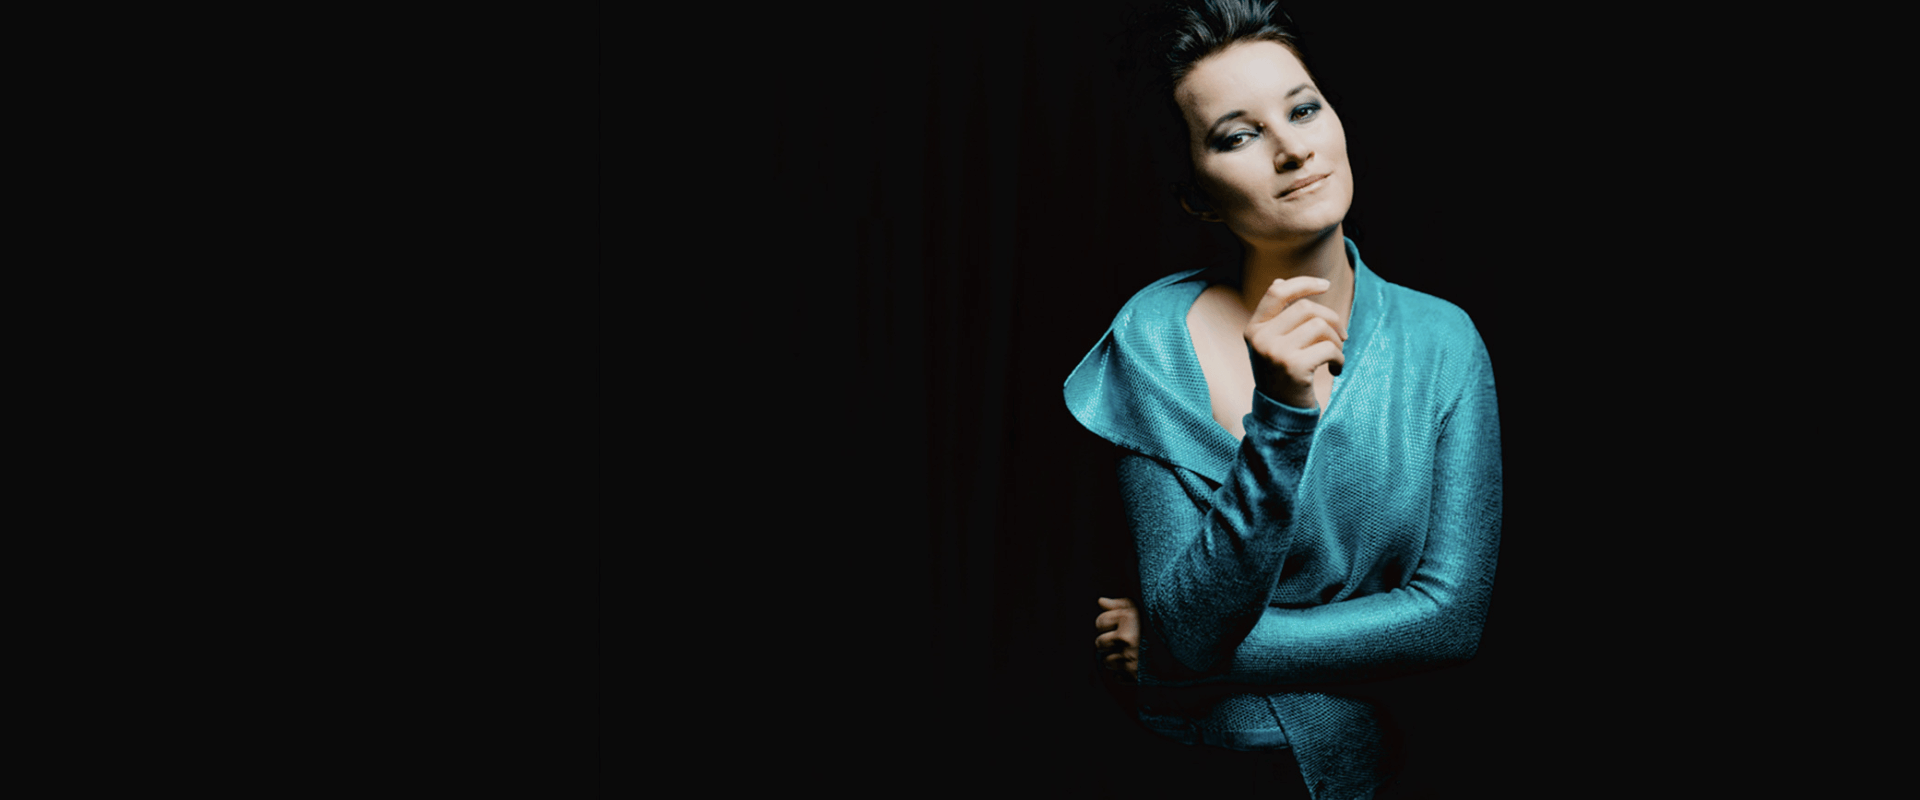 Anna Prohaska debiutuje na festiwalu Opera Rara w Krakowie jako Ilia w „Idomeneo”